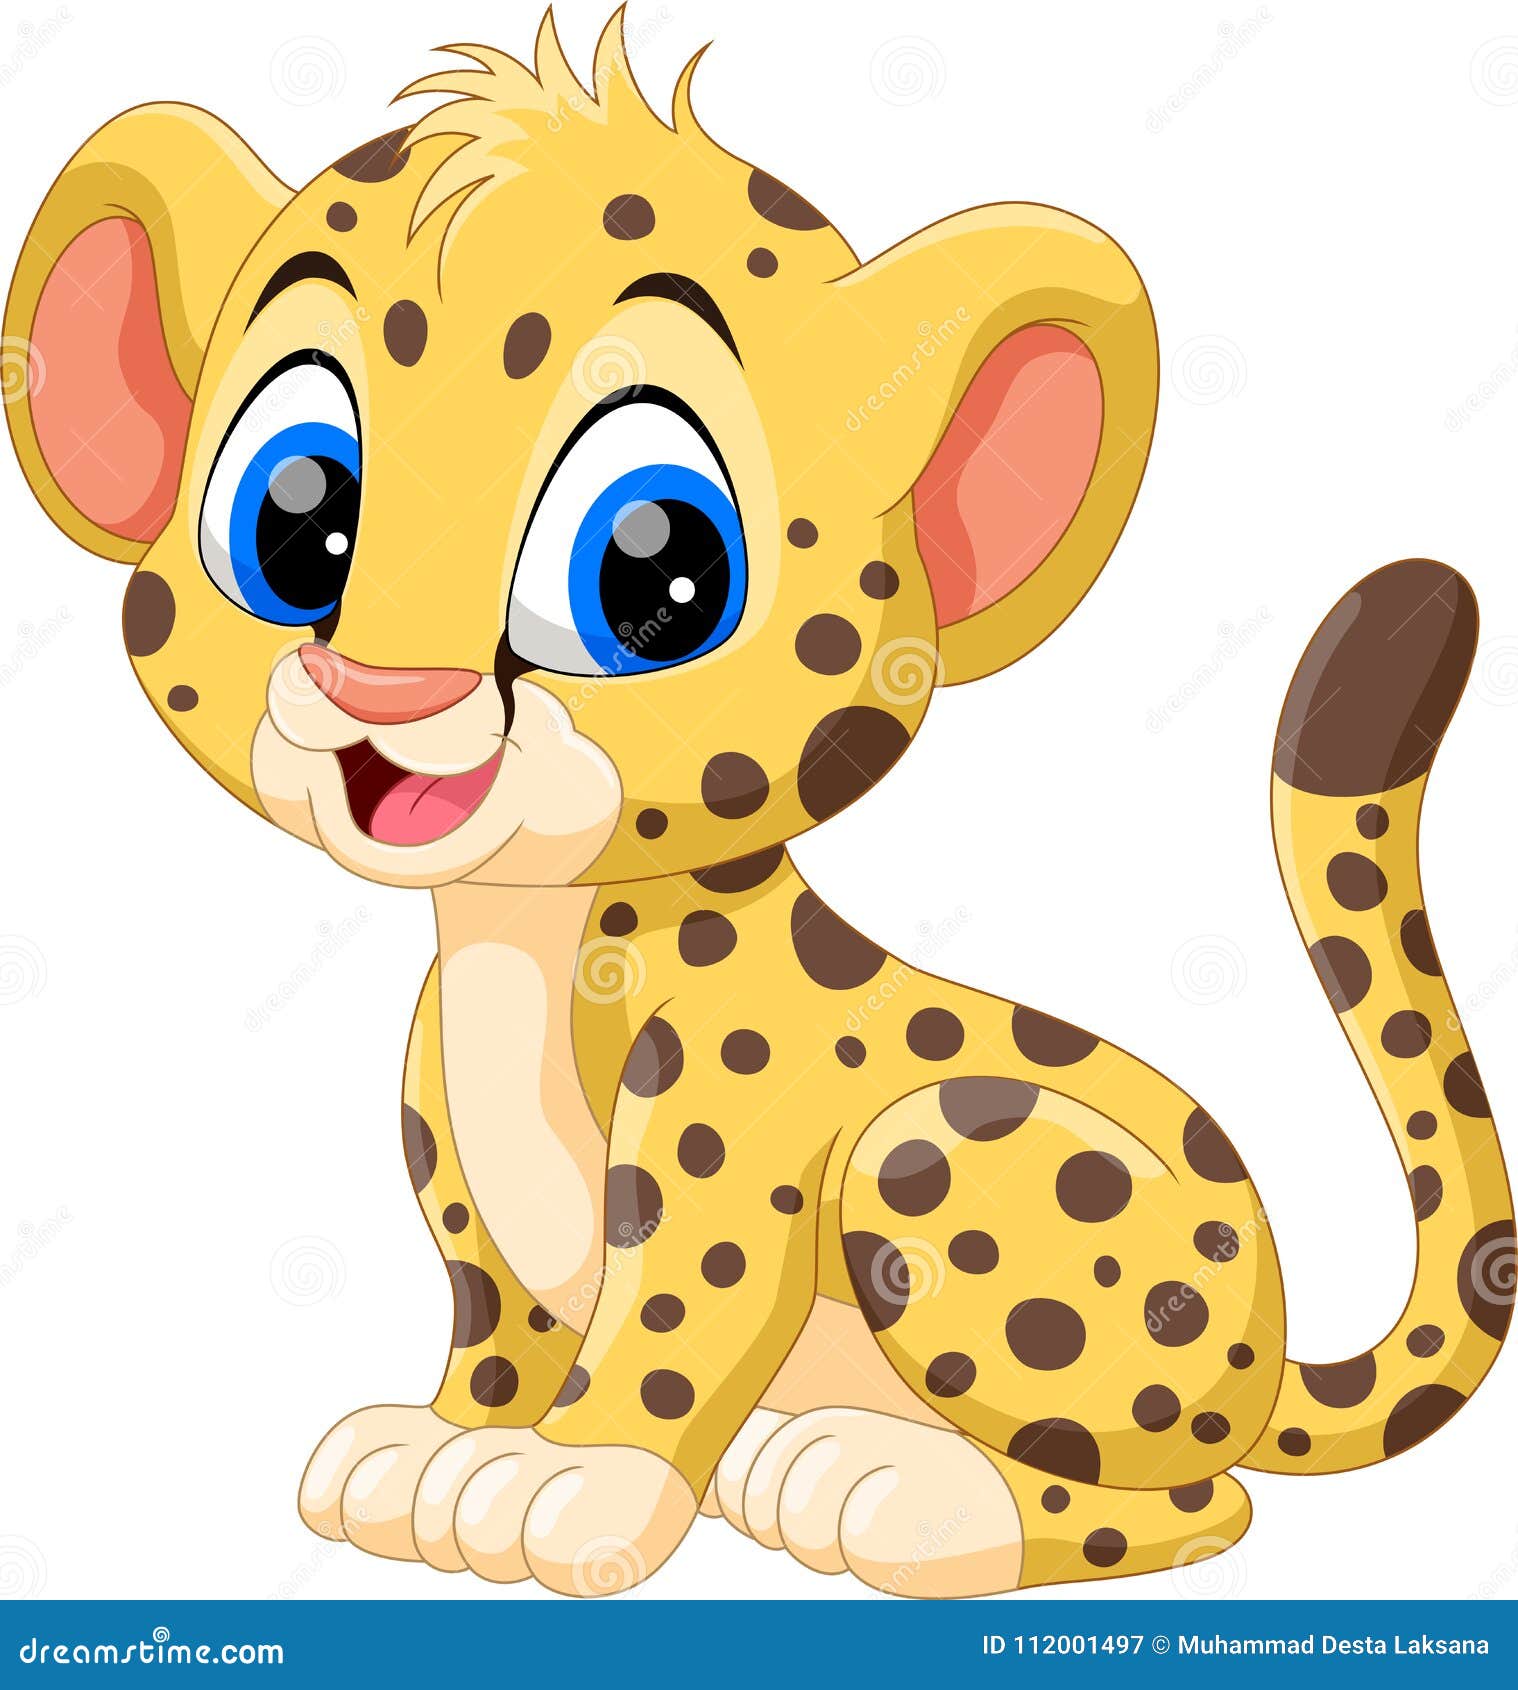 Cheetah Cartoon Stock Illustrations – 5,964 Cheetah Cartoon Stock  Illustrations, Vectors & Clipart - Dreamstime